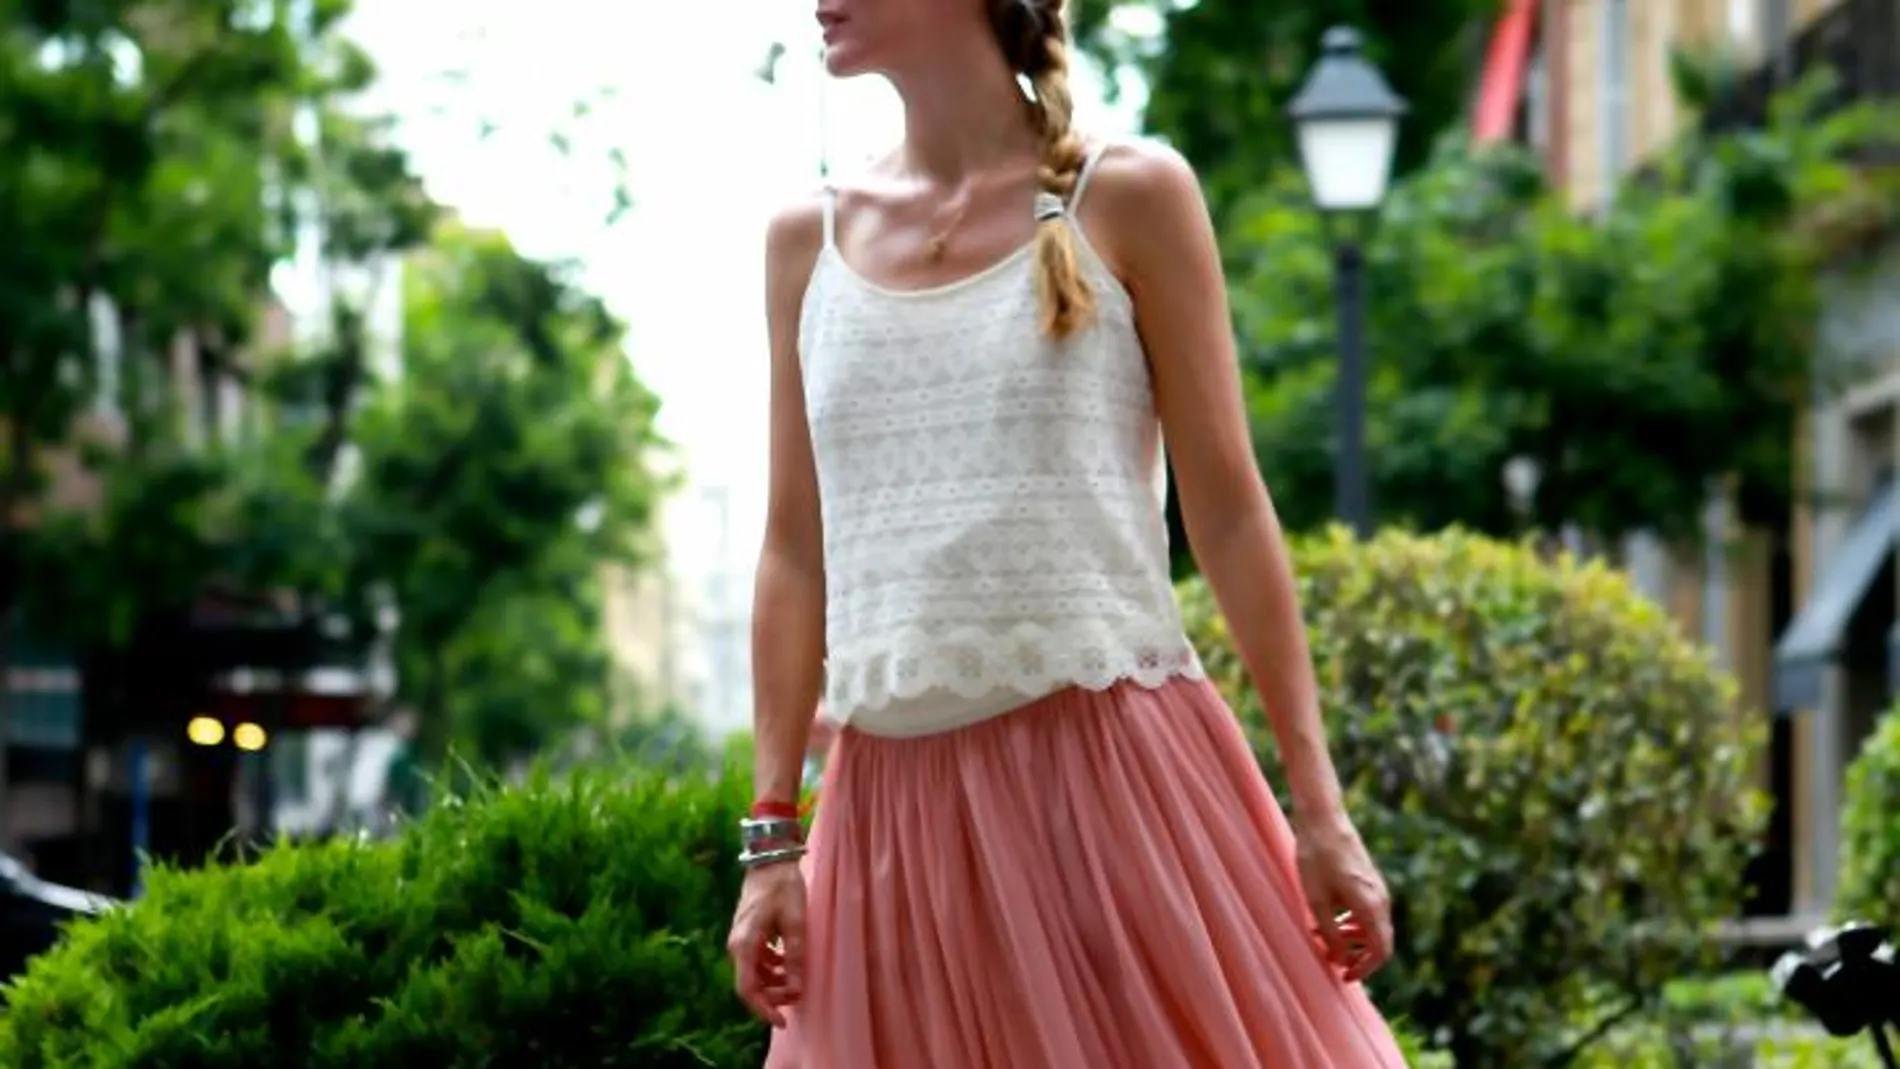 Vega luce una falda de aire romántico en rosa pálido de la firma española Poète